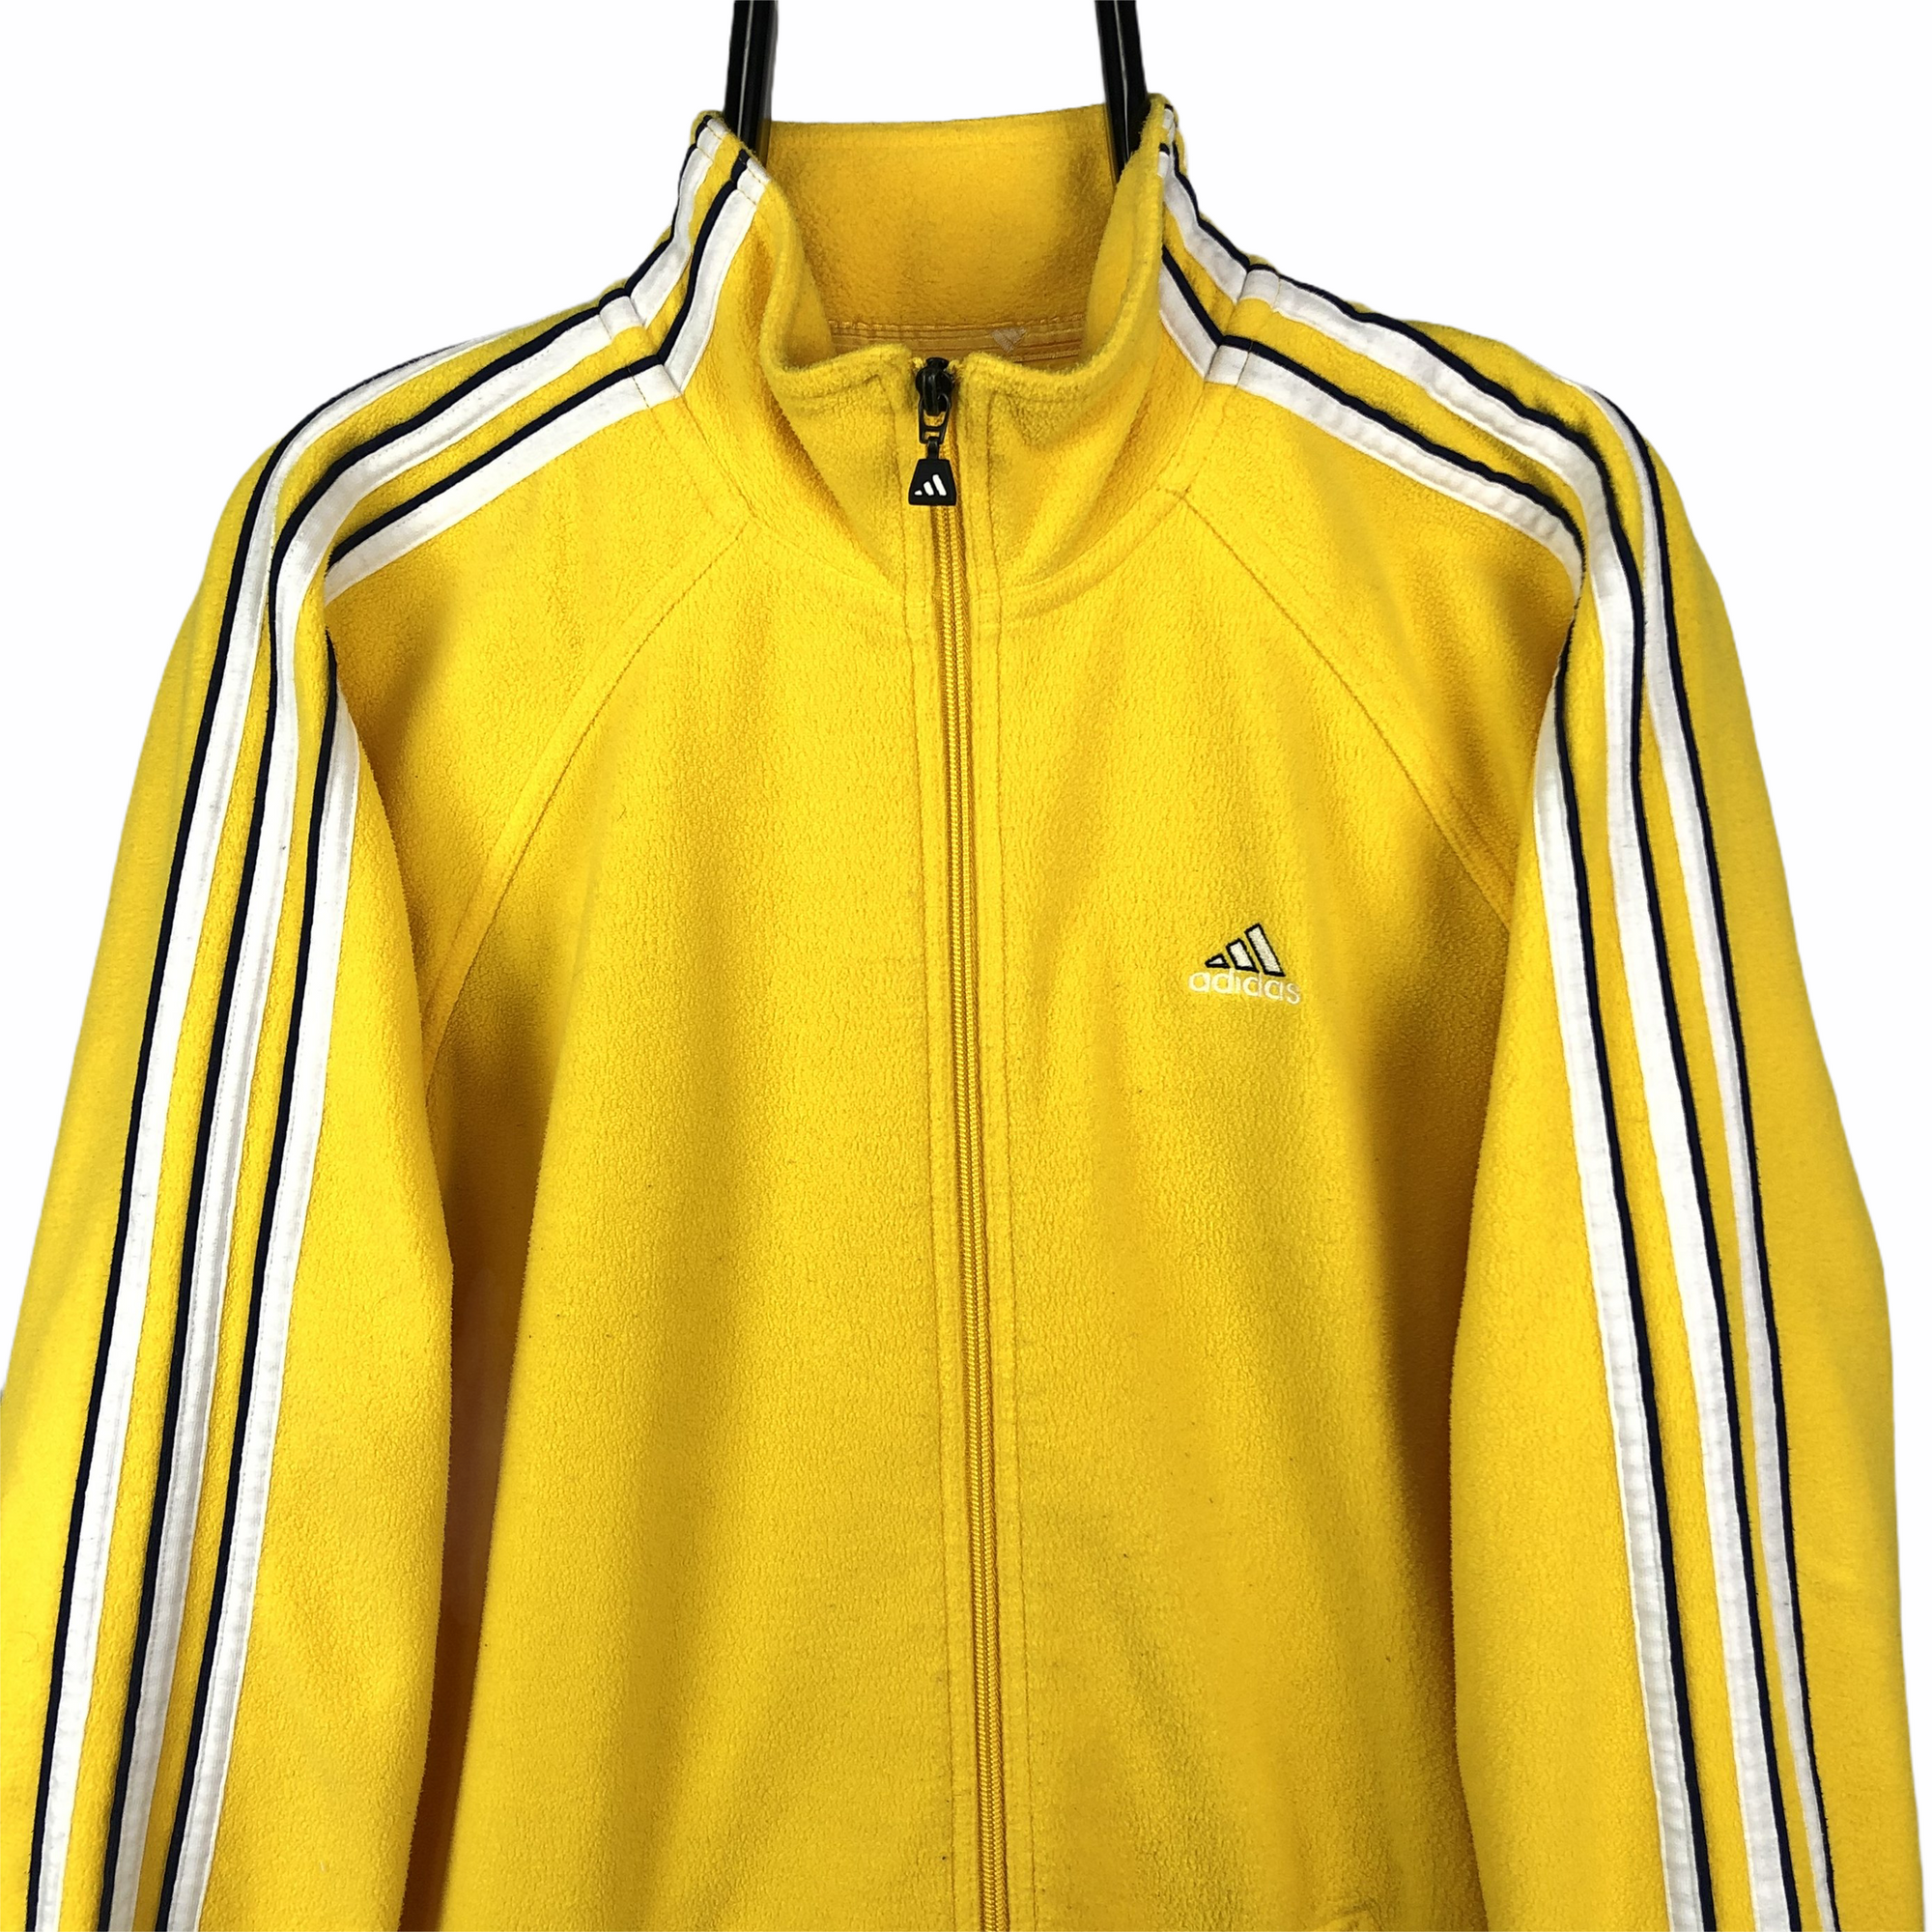 Vintage 90s Adidas Fleece in Yellow - Men's Medium/Women's Large